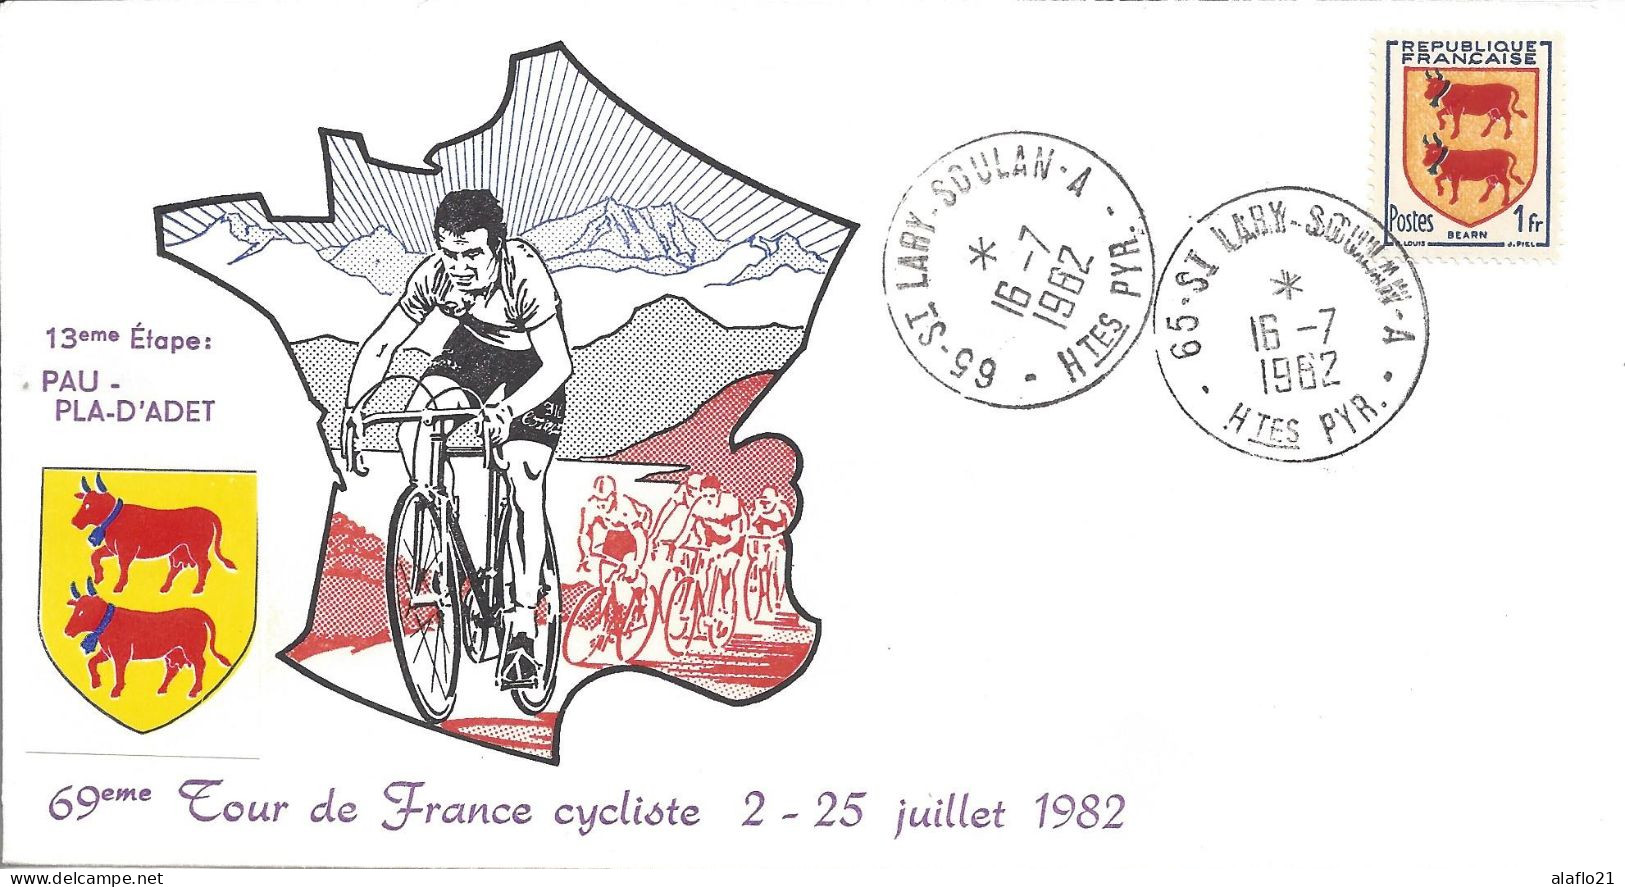 ENVELOPPE OFFICIELLE TOUR De FRANCE CYCLISTE 1982 - 13e ETAPE - PAU PLAT D'ADET - Commemorative Postmarks